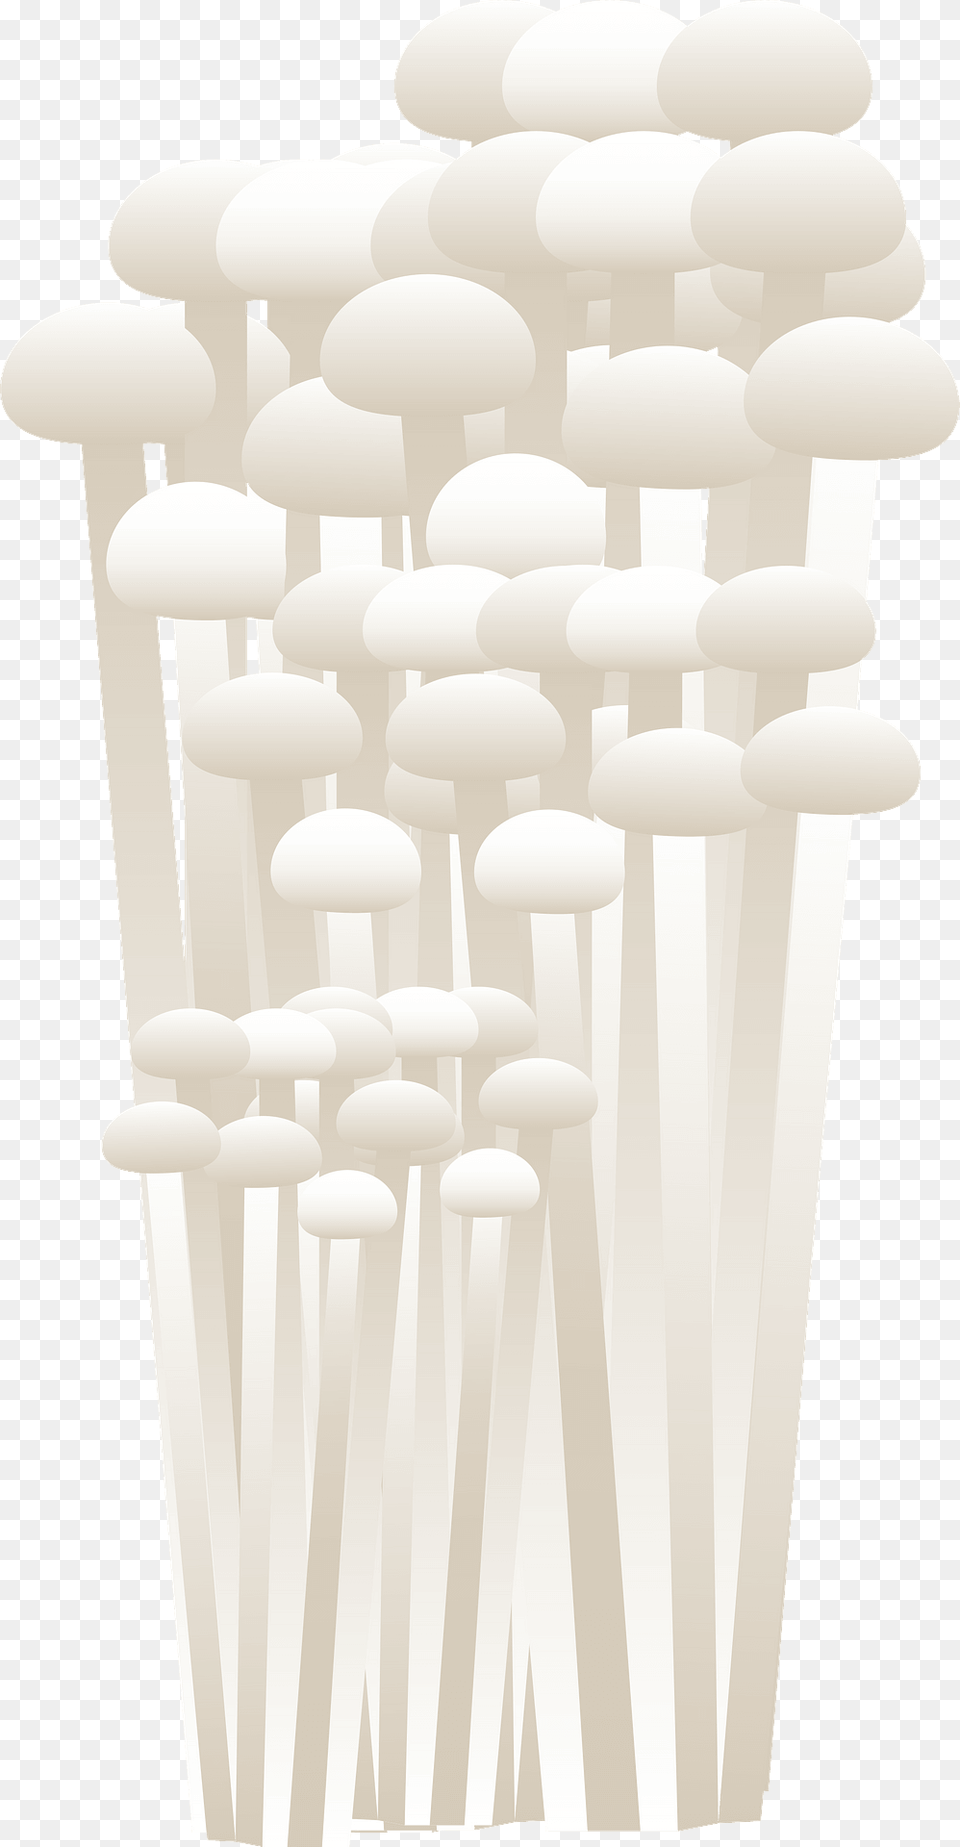 Enokitake Mushroom Clipart, Chandelier, Lamp, Fungus, Plant Png Image